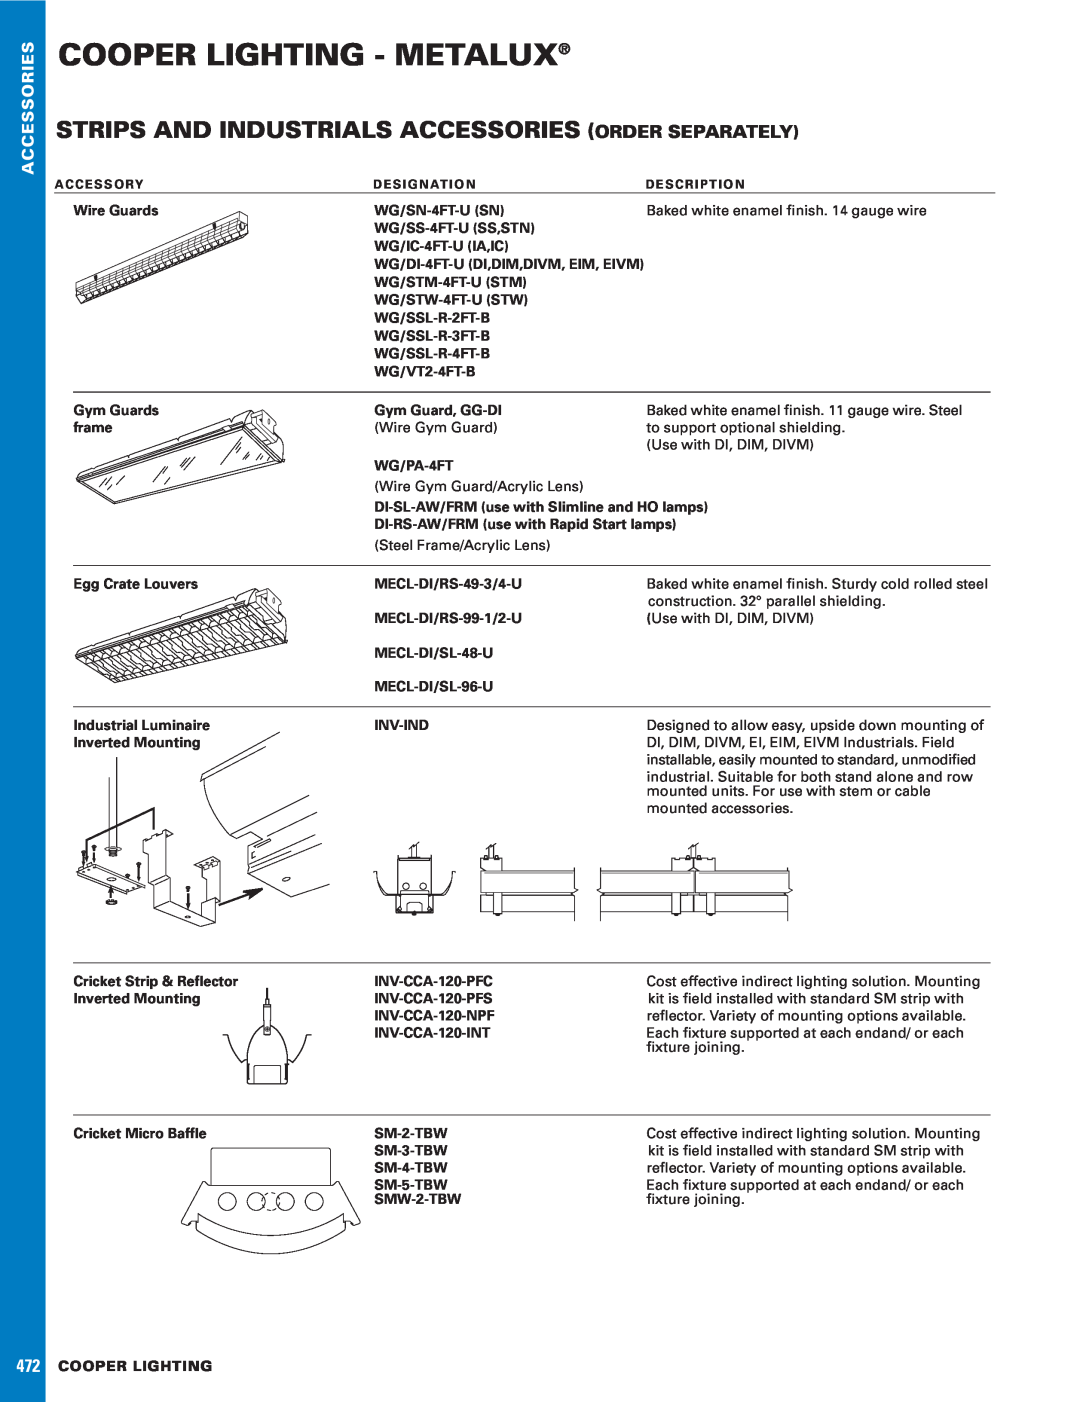 Cooper Lighting 471 manual Options & Aessoriescc, Cooper Lighting - Metalux 